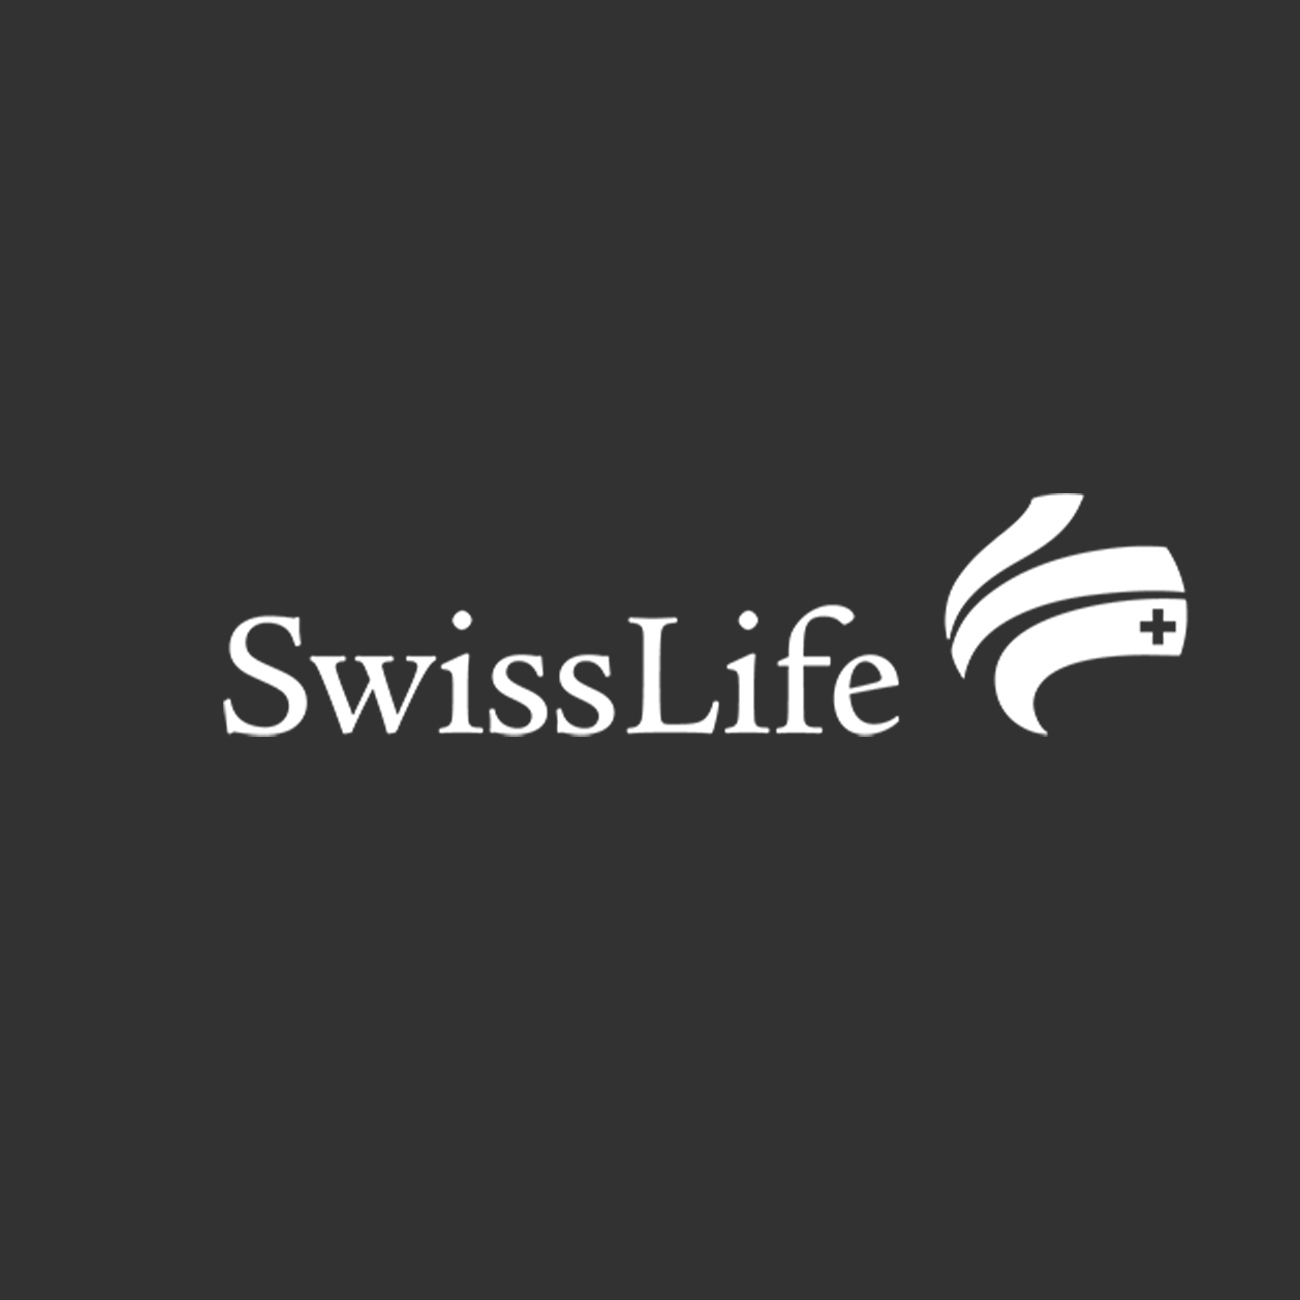 swisslife-swiss-life-vidéo-corporate-brandcontent-interviews